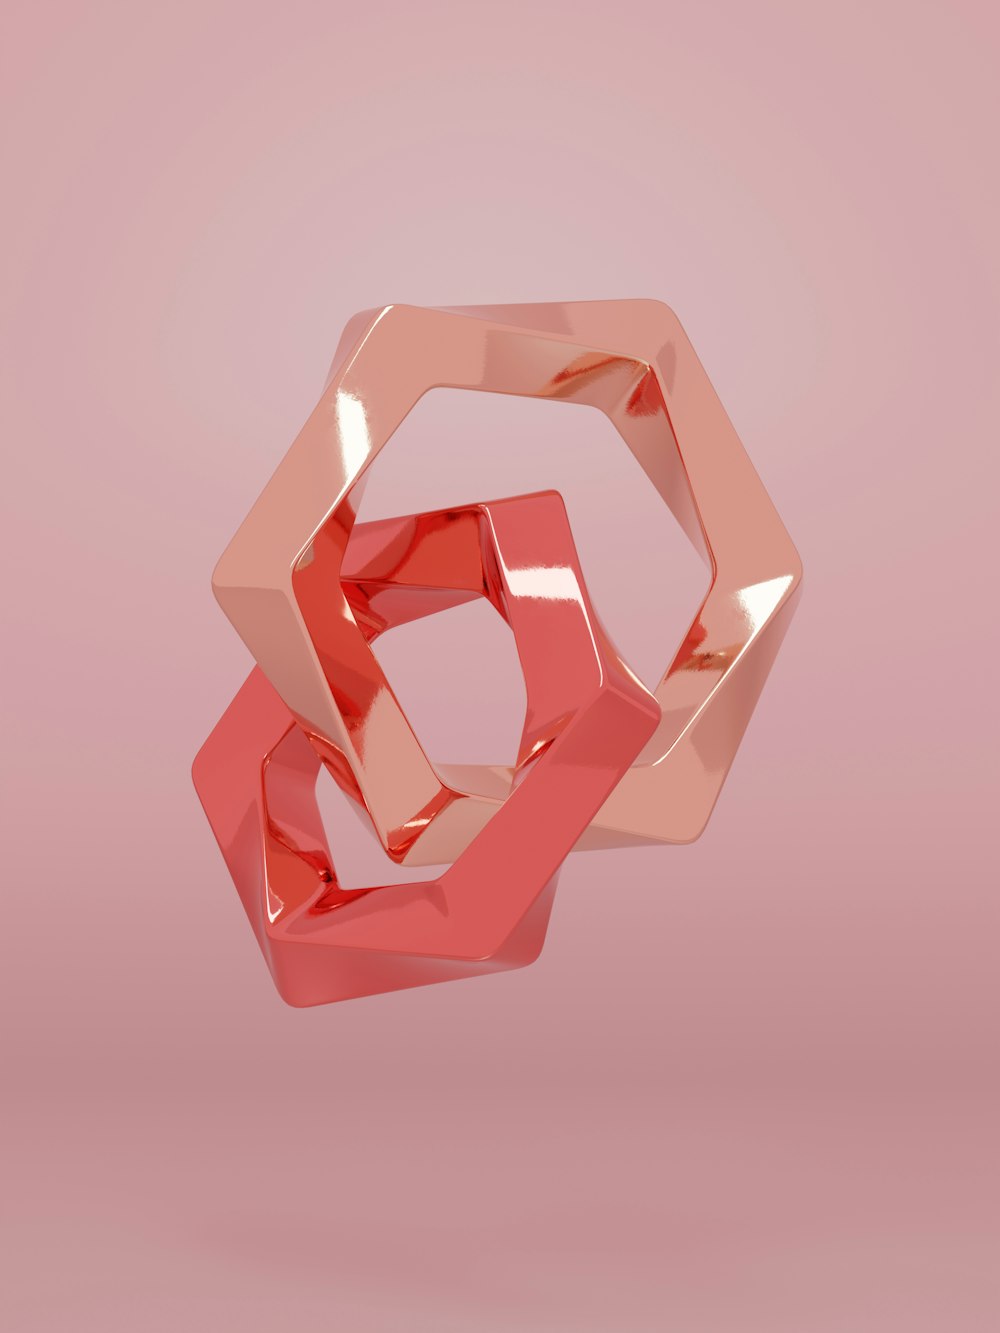 uma imagem 3d de um objeto rosa em um fundo rosa